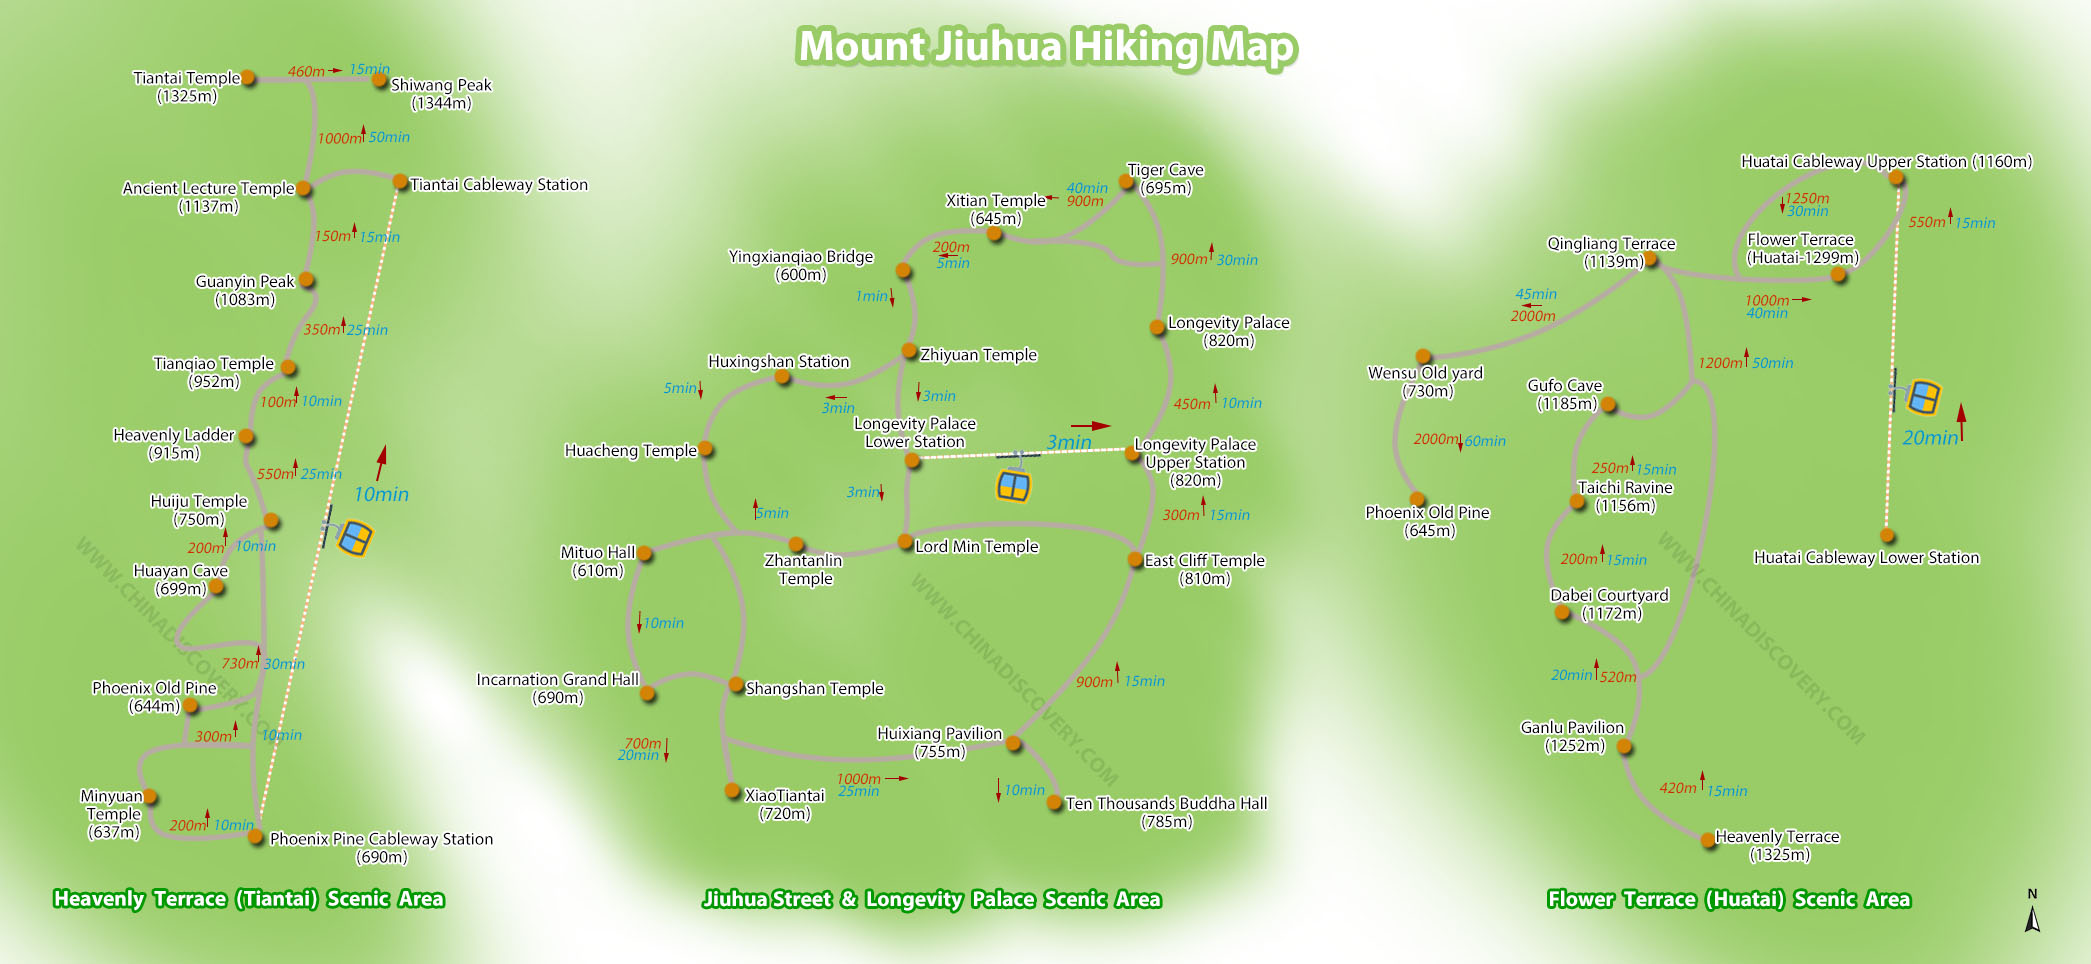 Mount Jiuhua Hiking Map